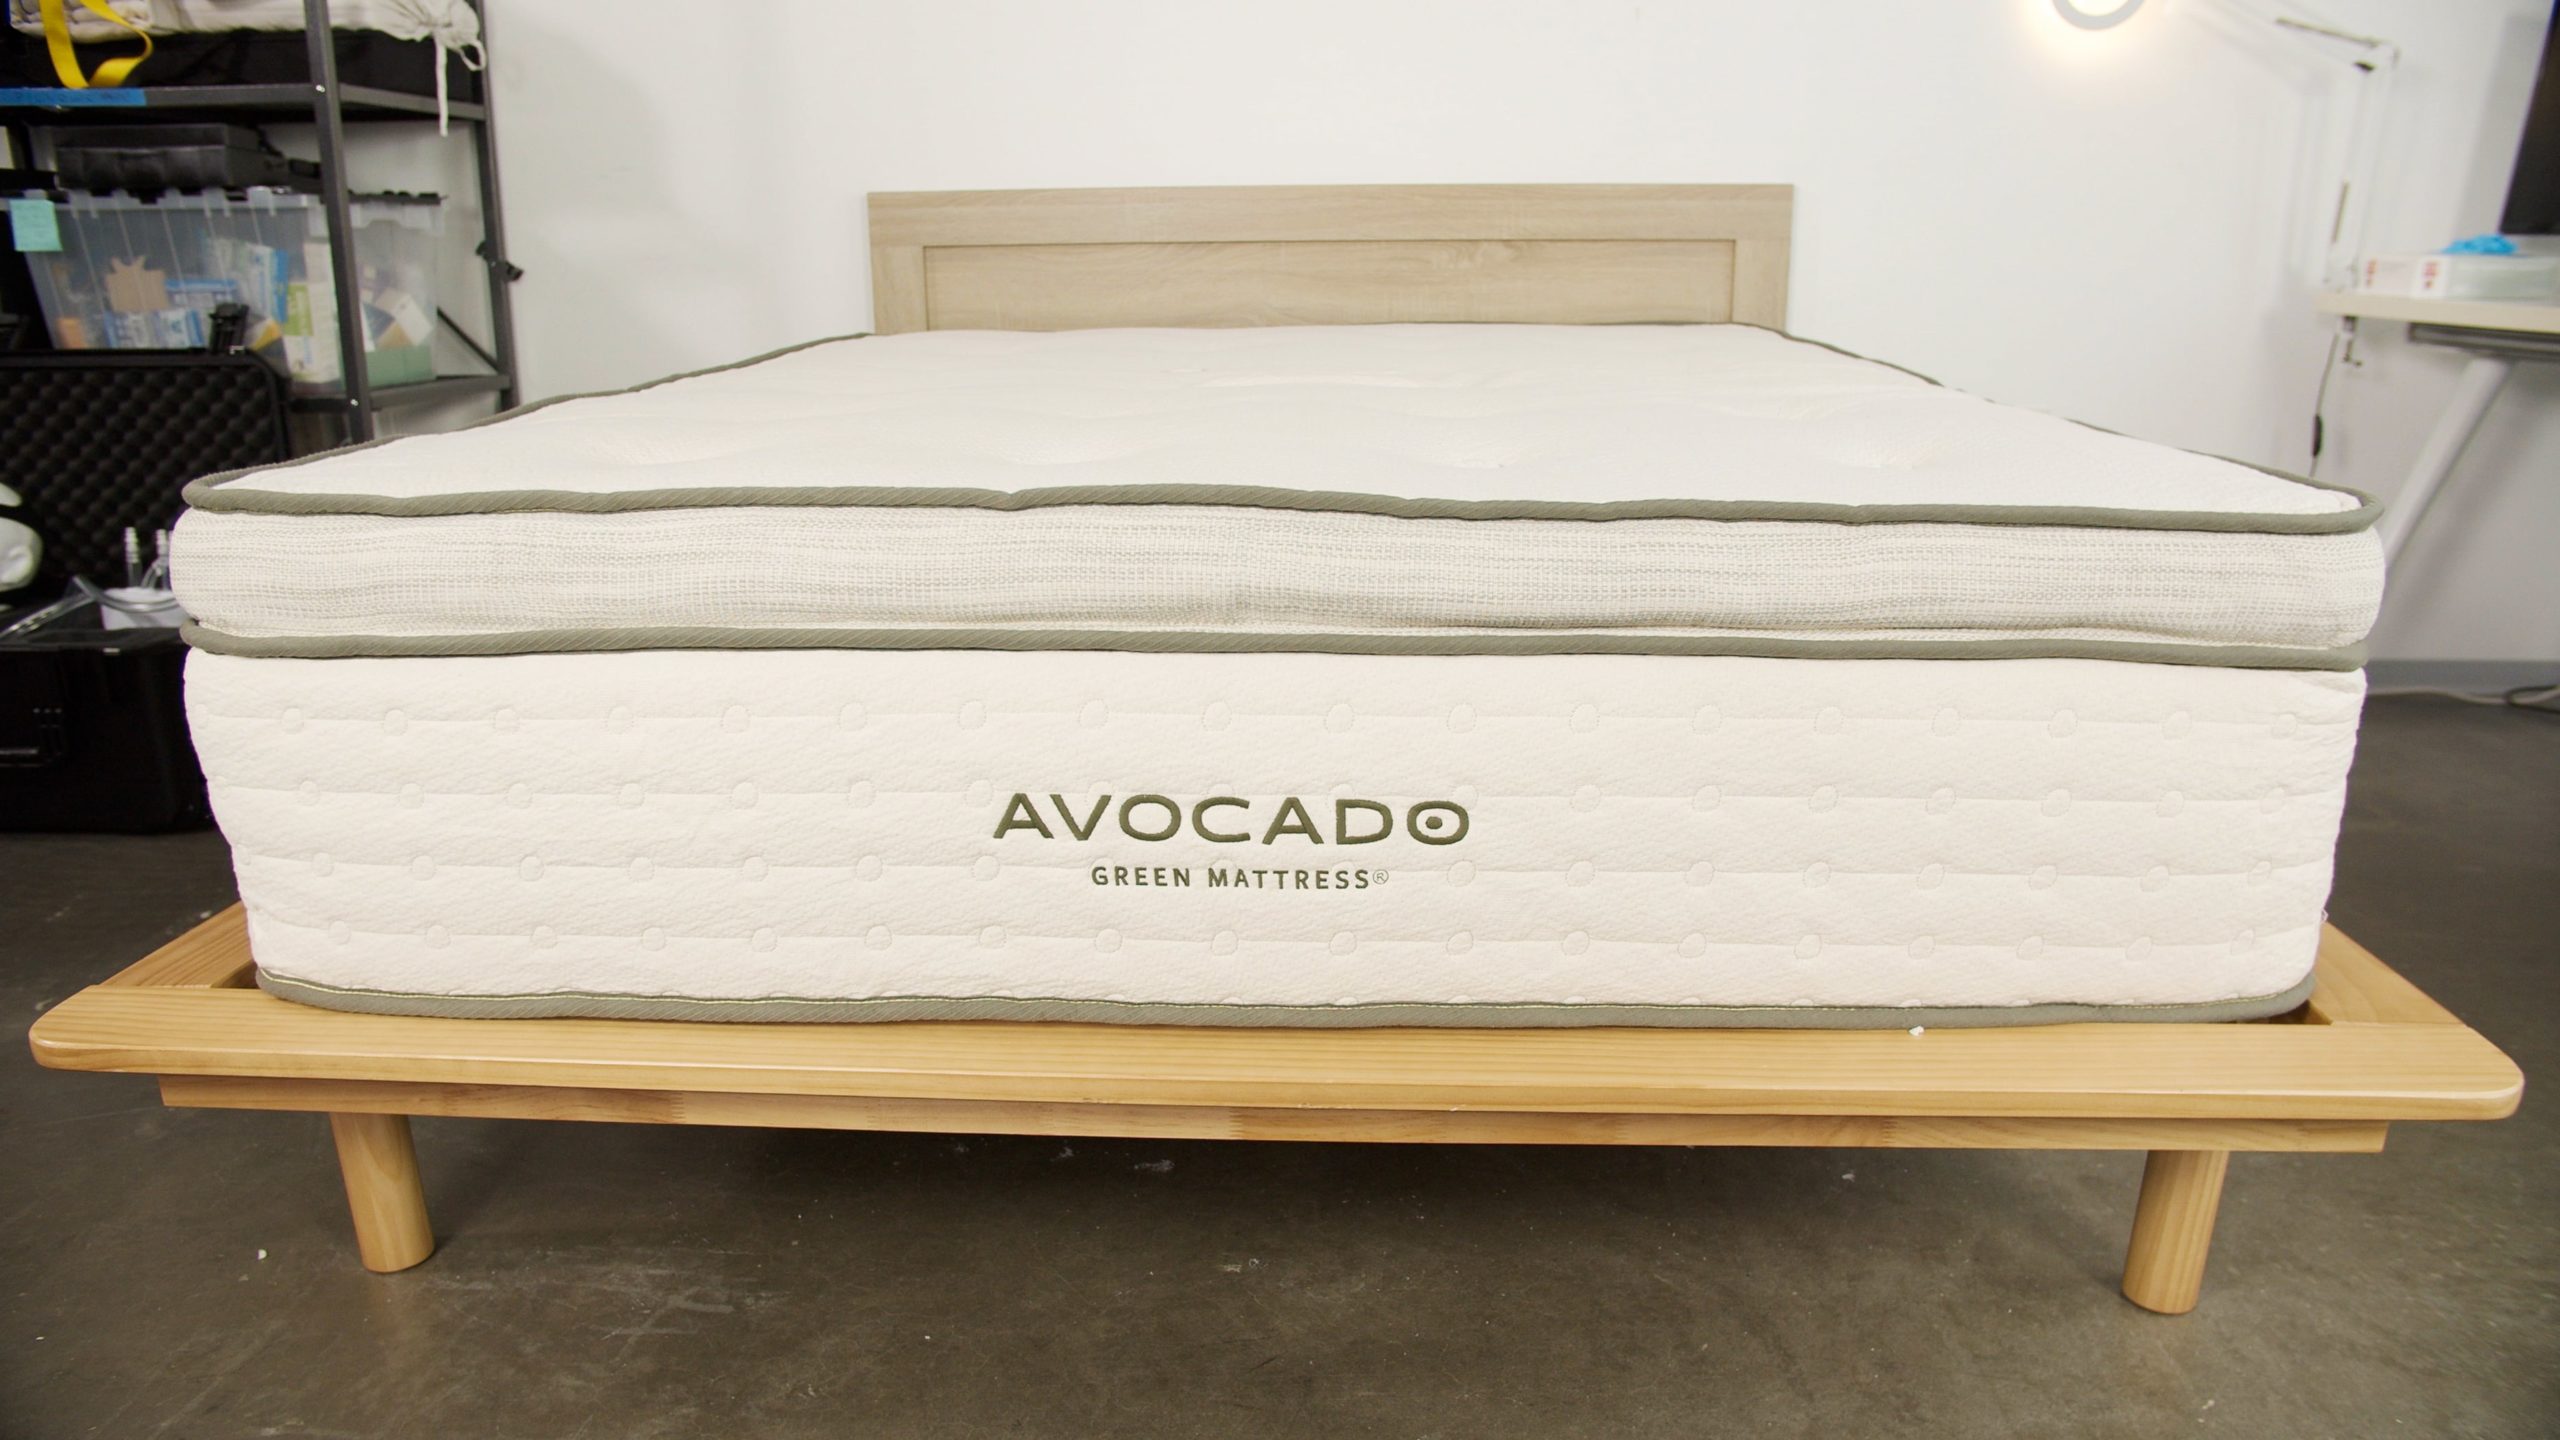 avocado kids mattress review